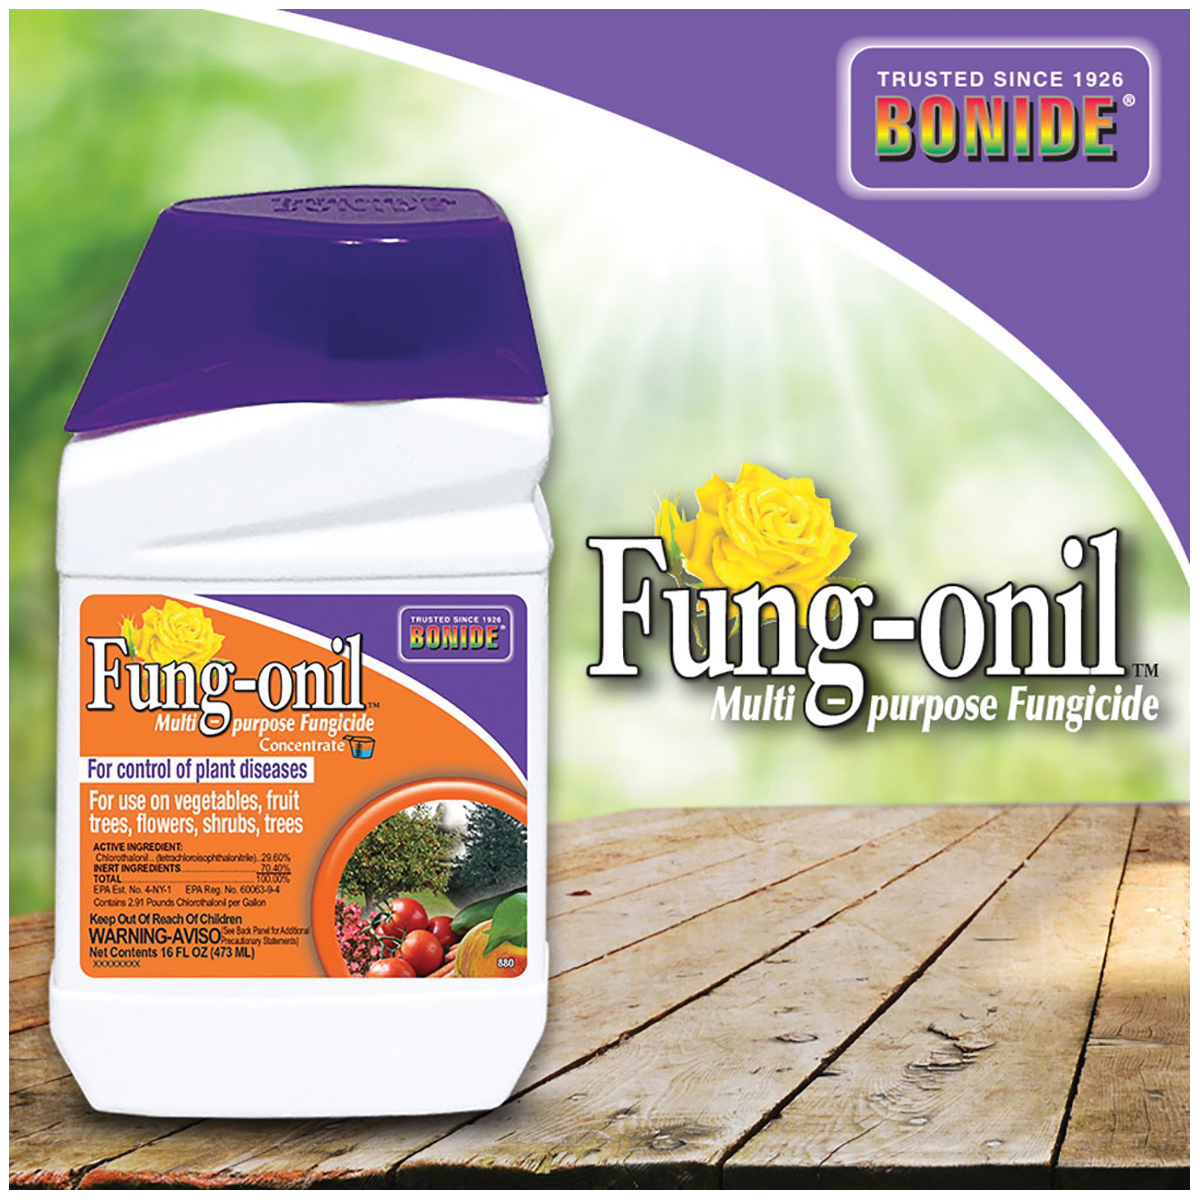 Bonide Fung-onil 880 Fungicide, Liquid, Minimal, White, 1 pt - 4